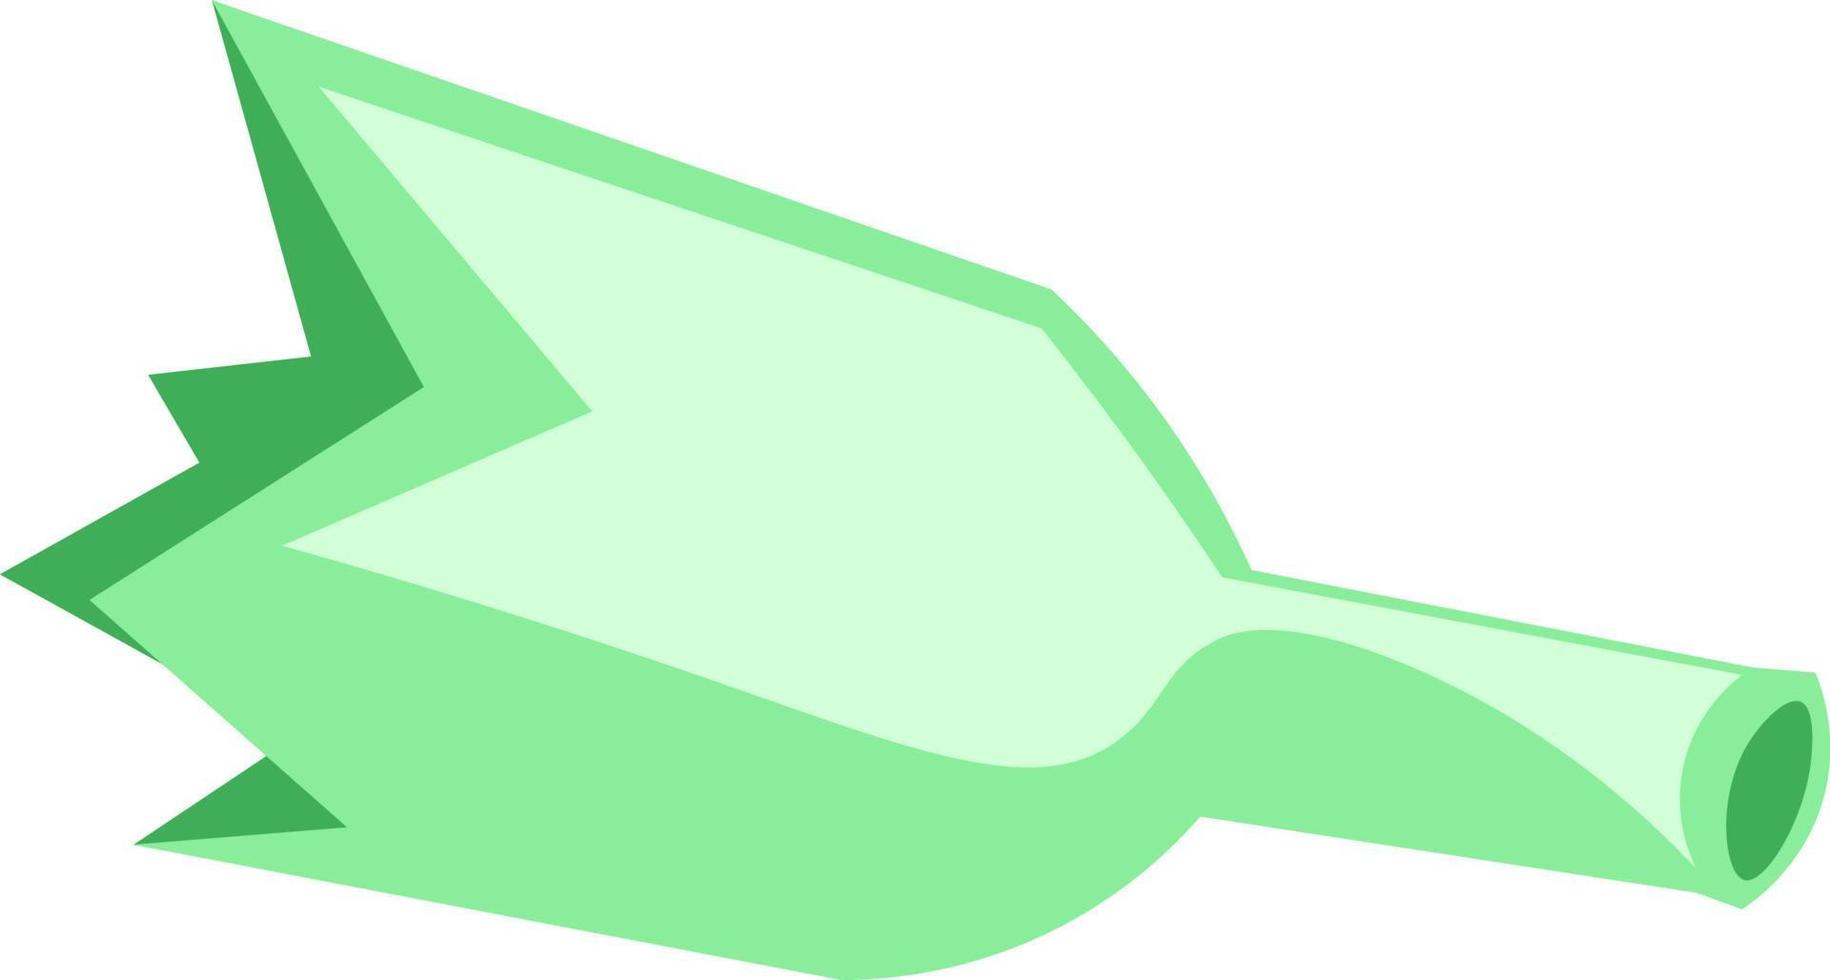 una botella verde rota, vector o ilustración de color.